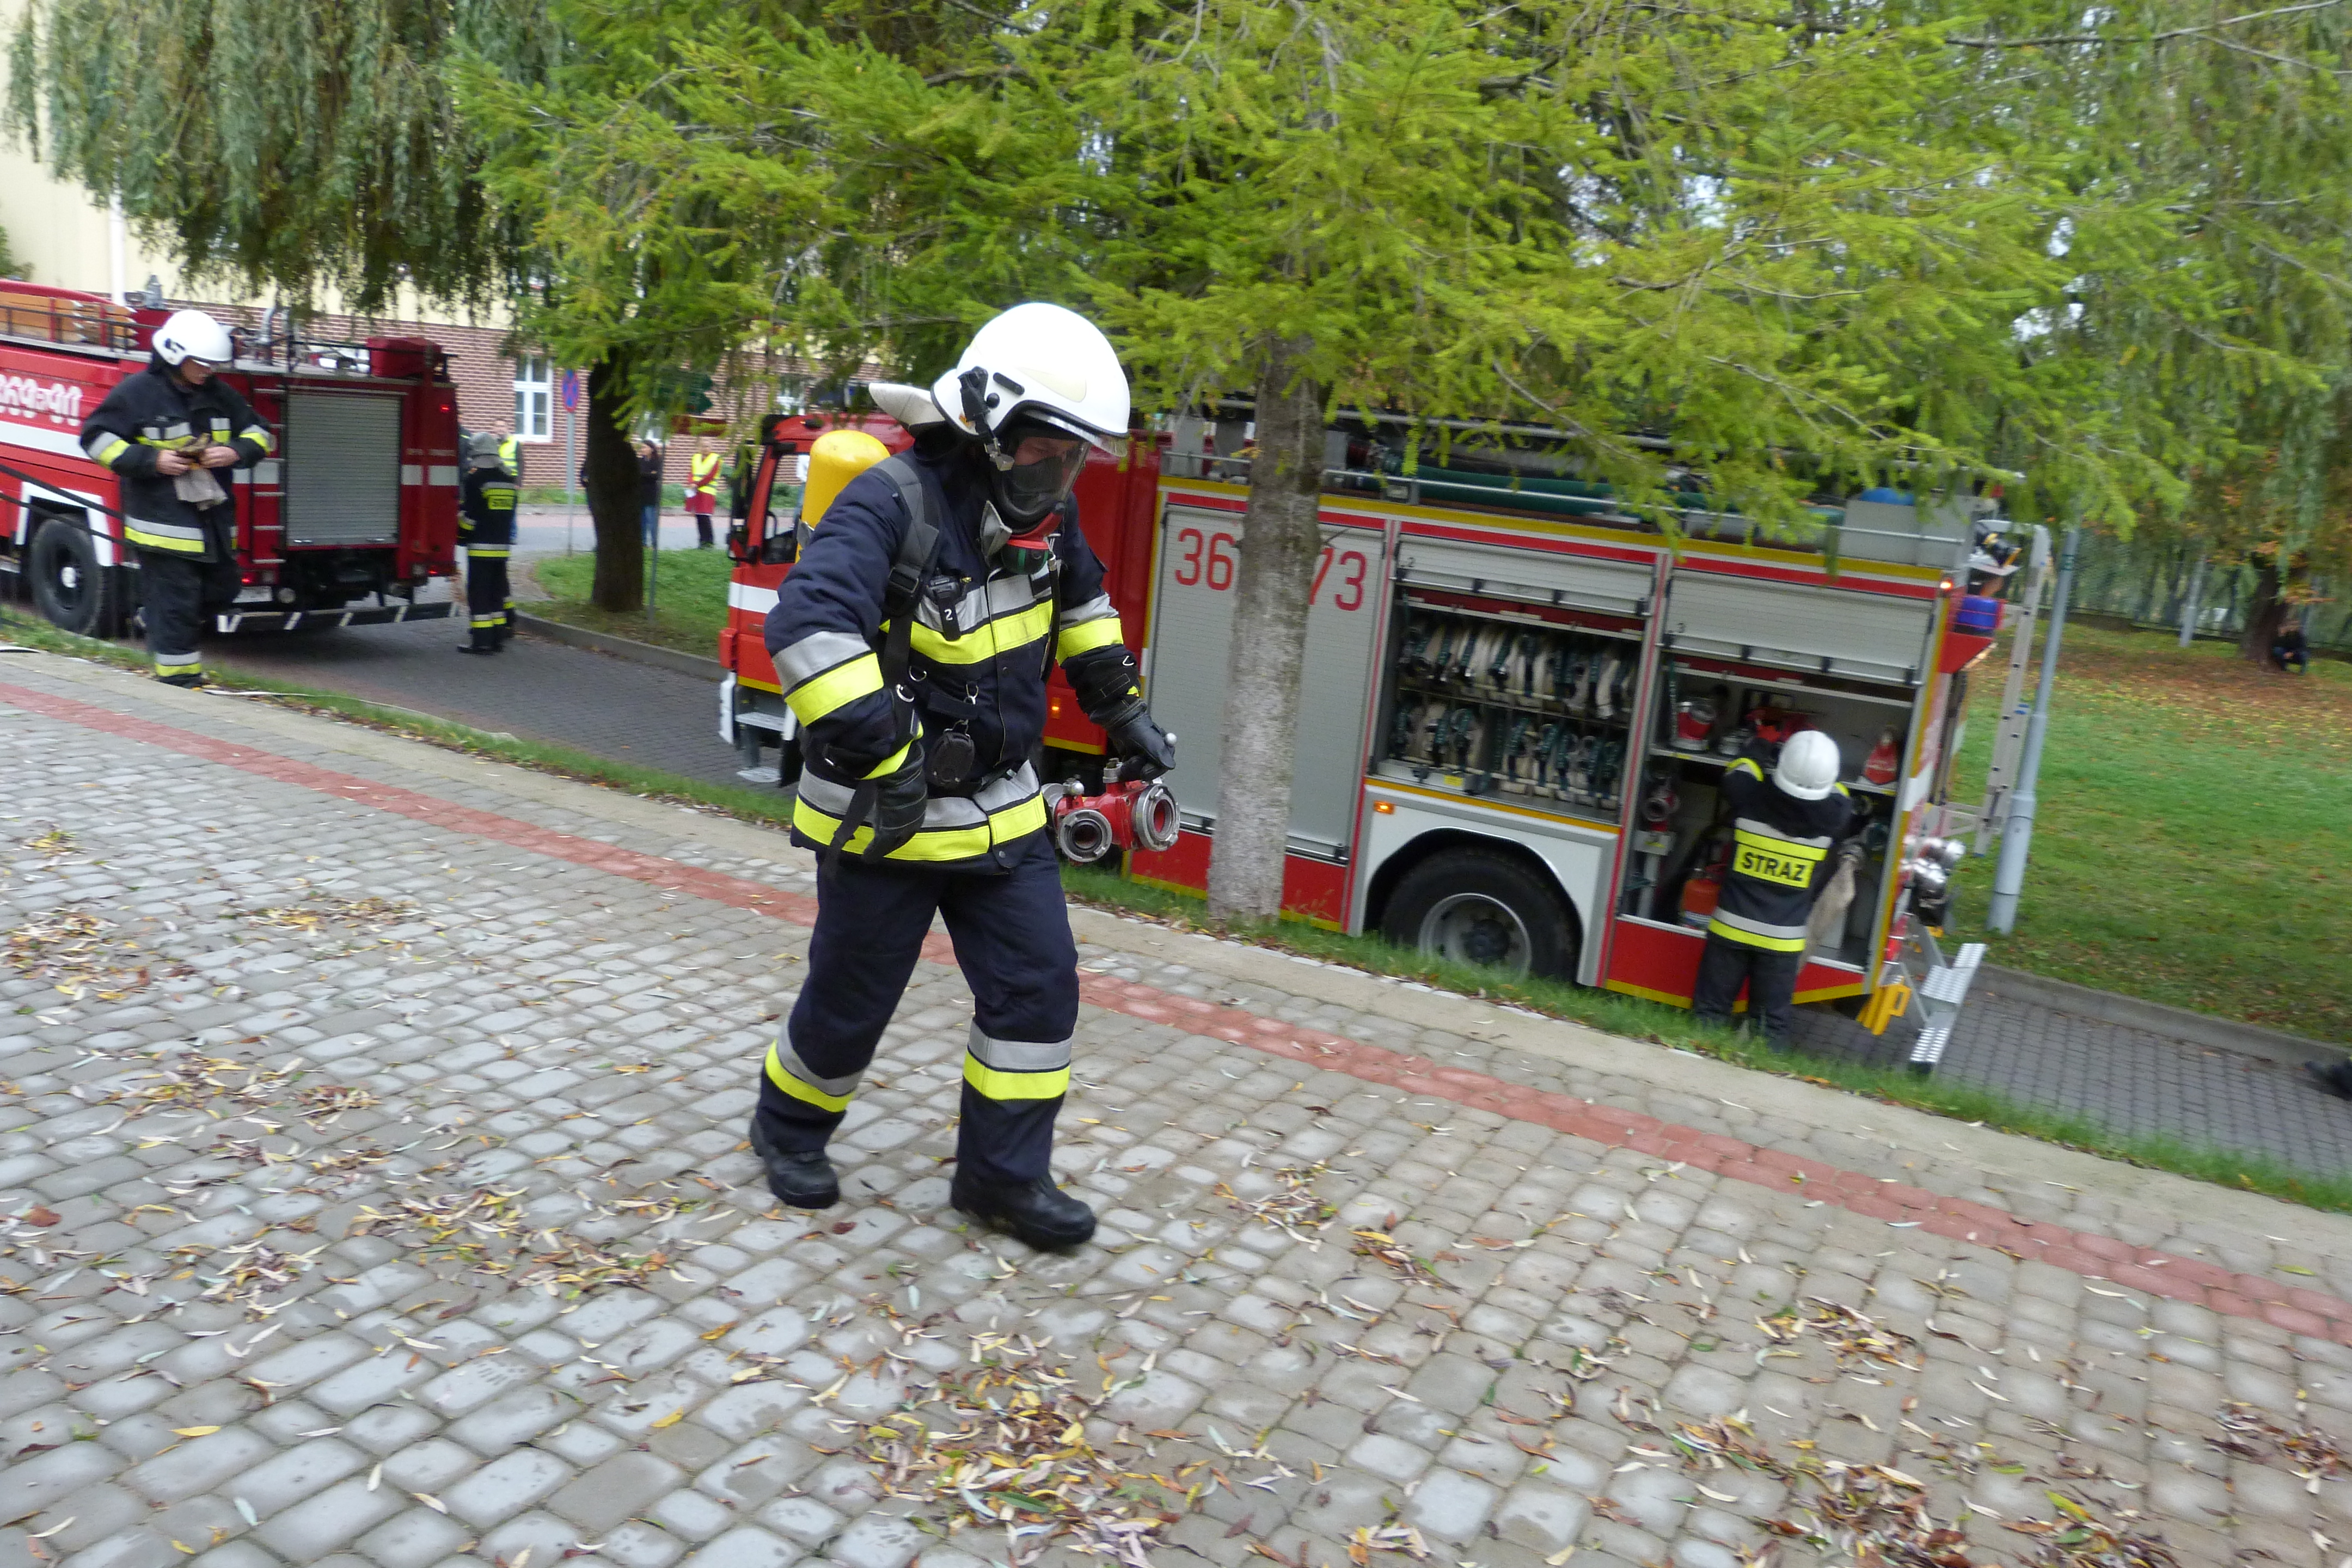 Ćwiczenia zgrywające Ochotniczych Straży Pożarnych - Strażak podczas ćwiczeń